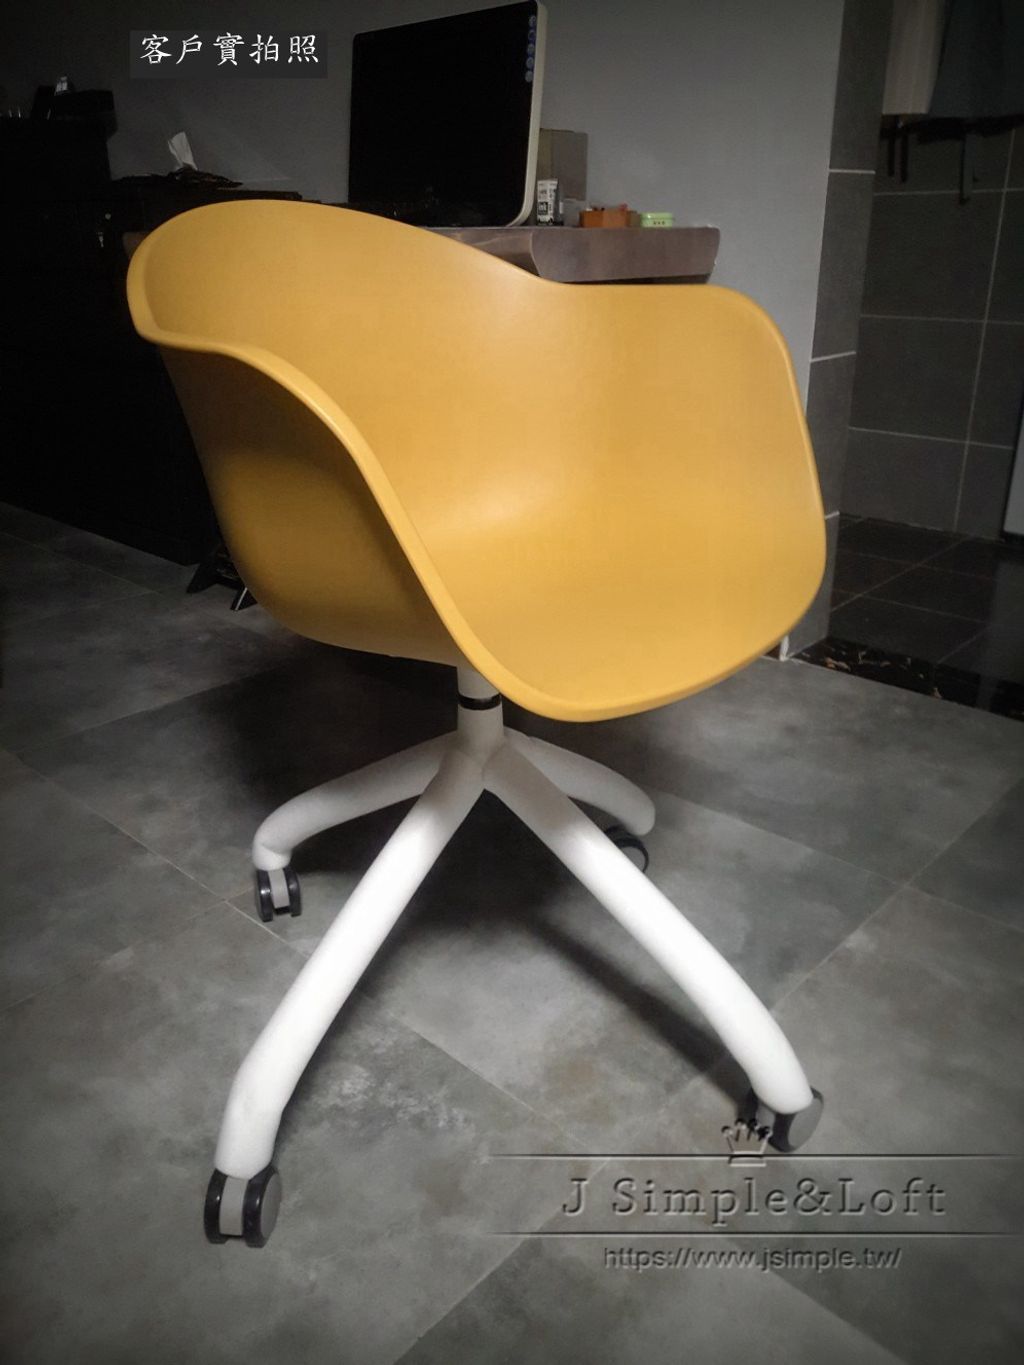 13丹麥設計簡約餐椅BT056 (2).jpg